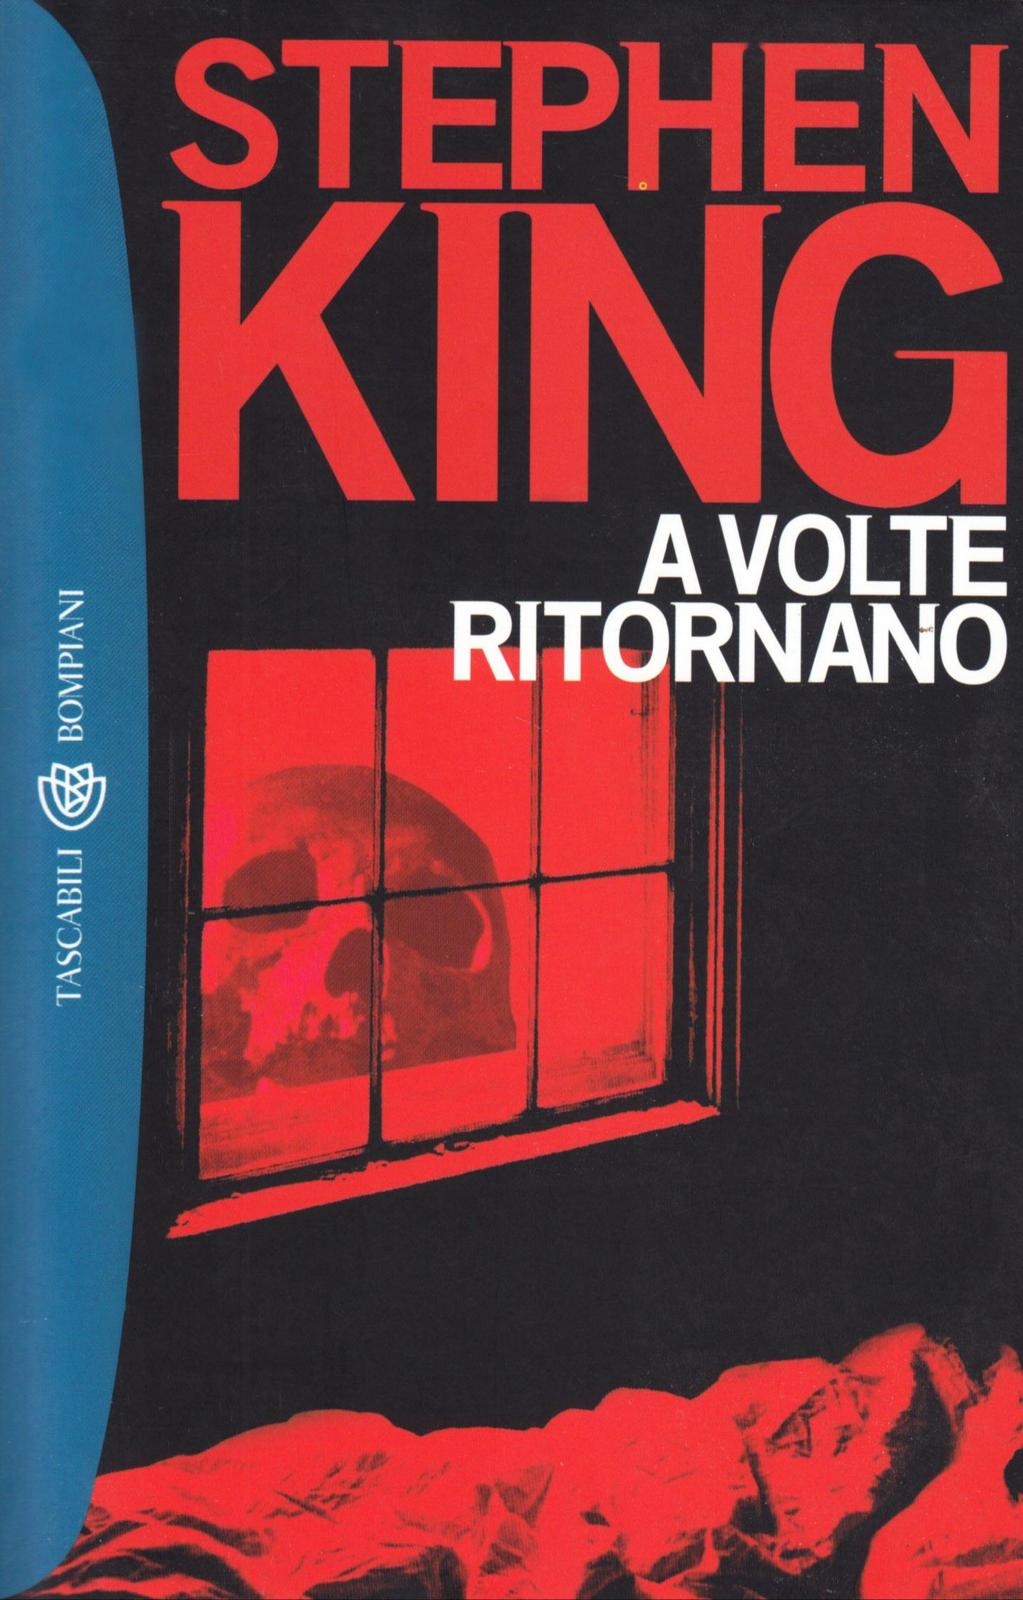 Stephen King: A volte ritornano (Italian language, Bompiani)